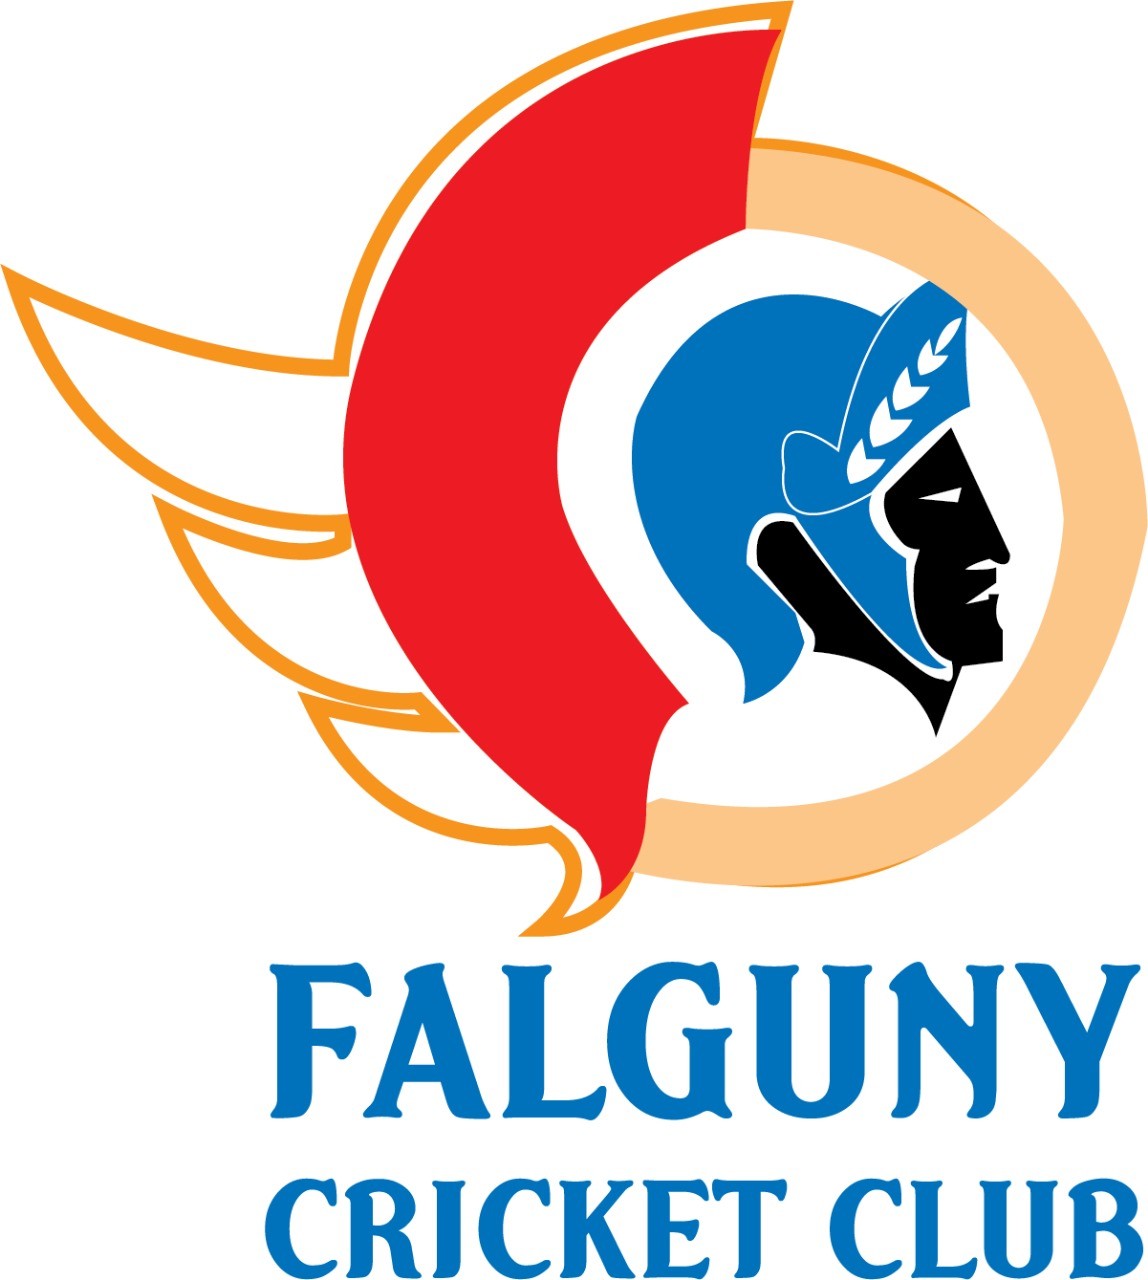 FALGUNY CRICKET CLUB